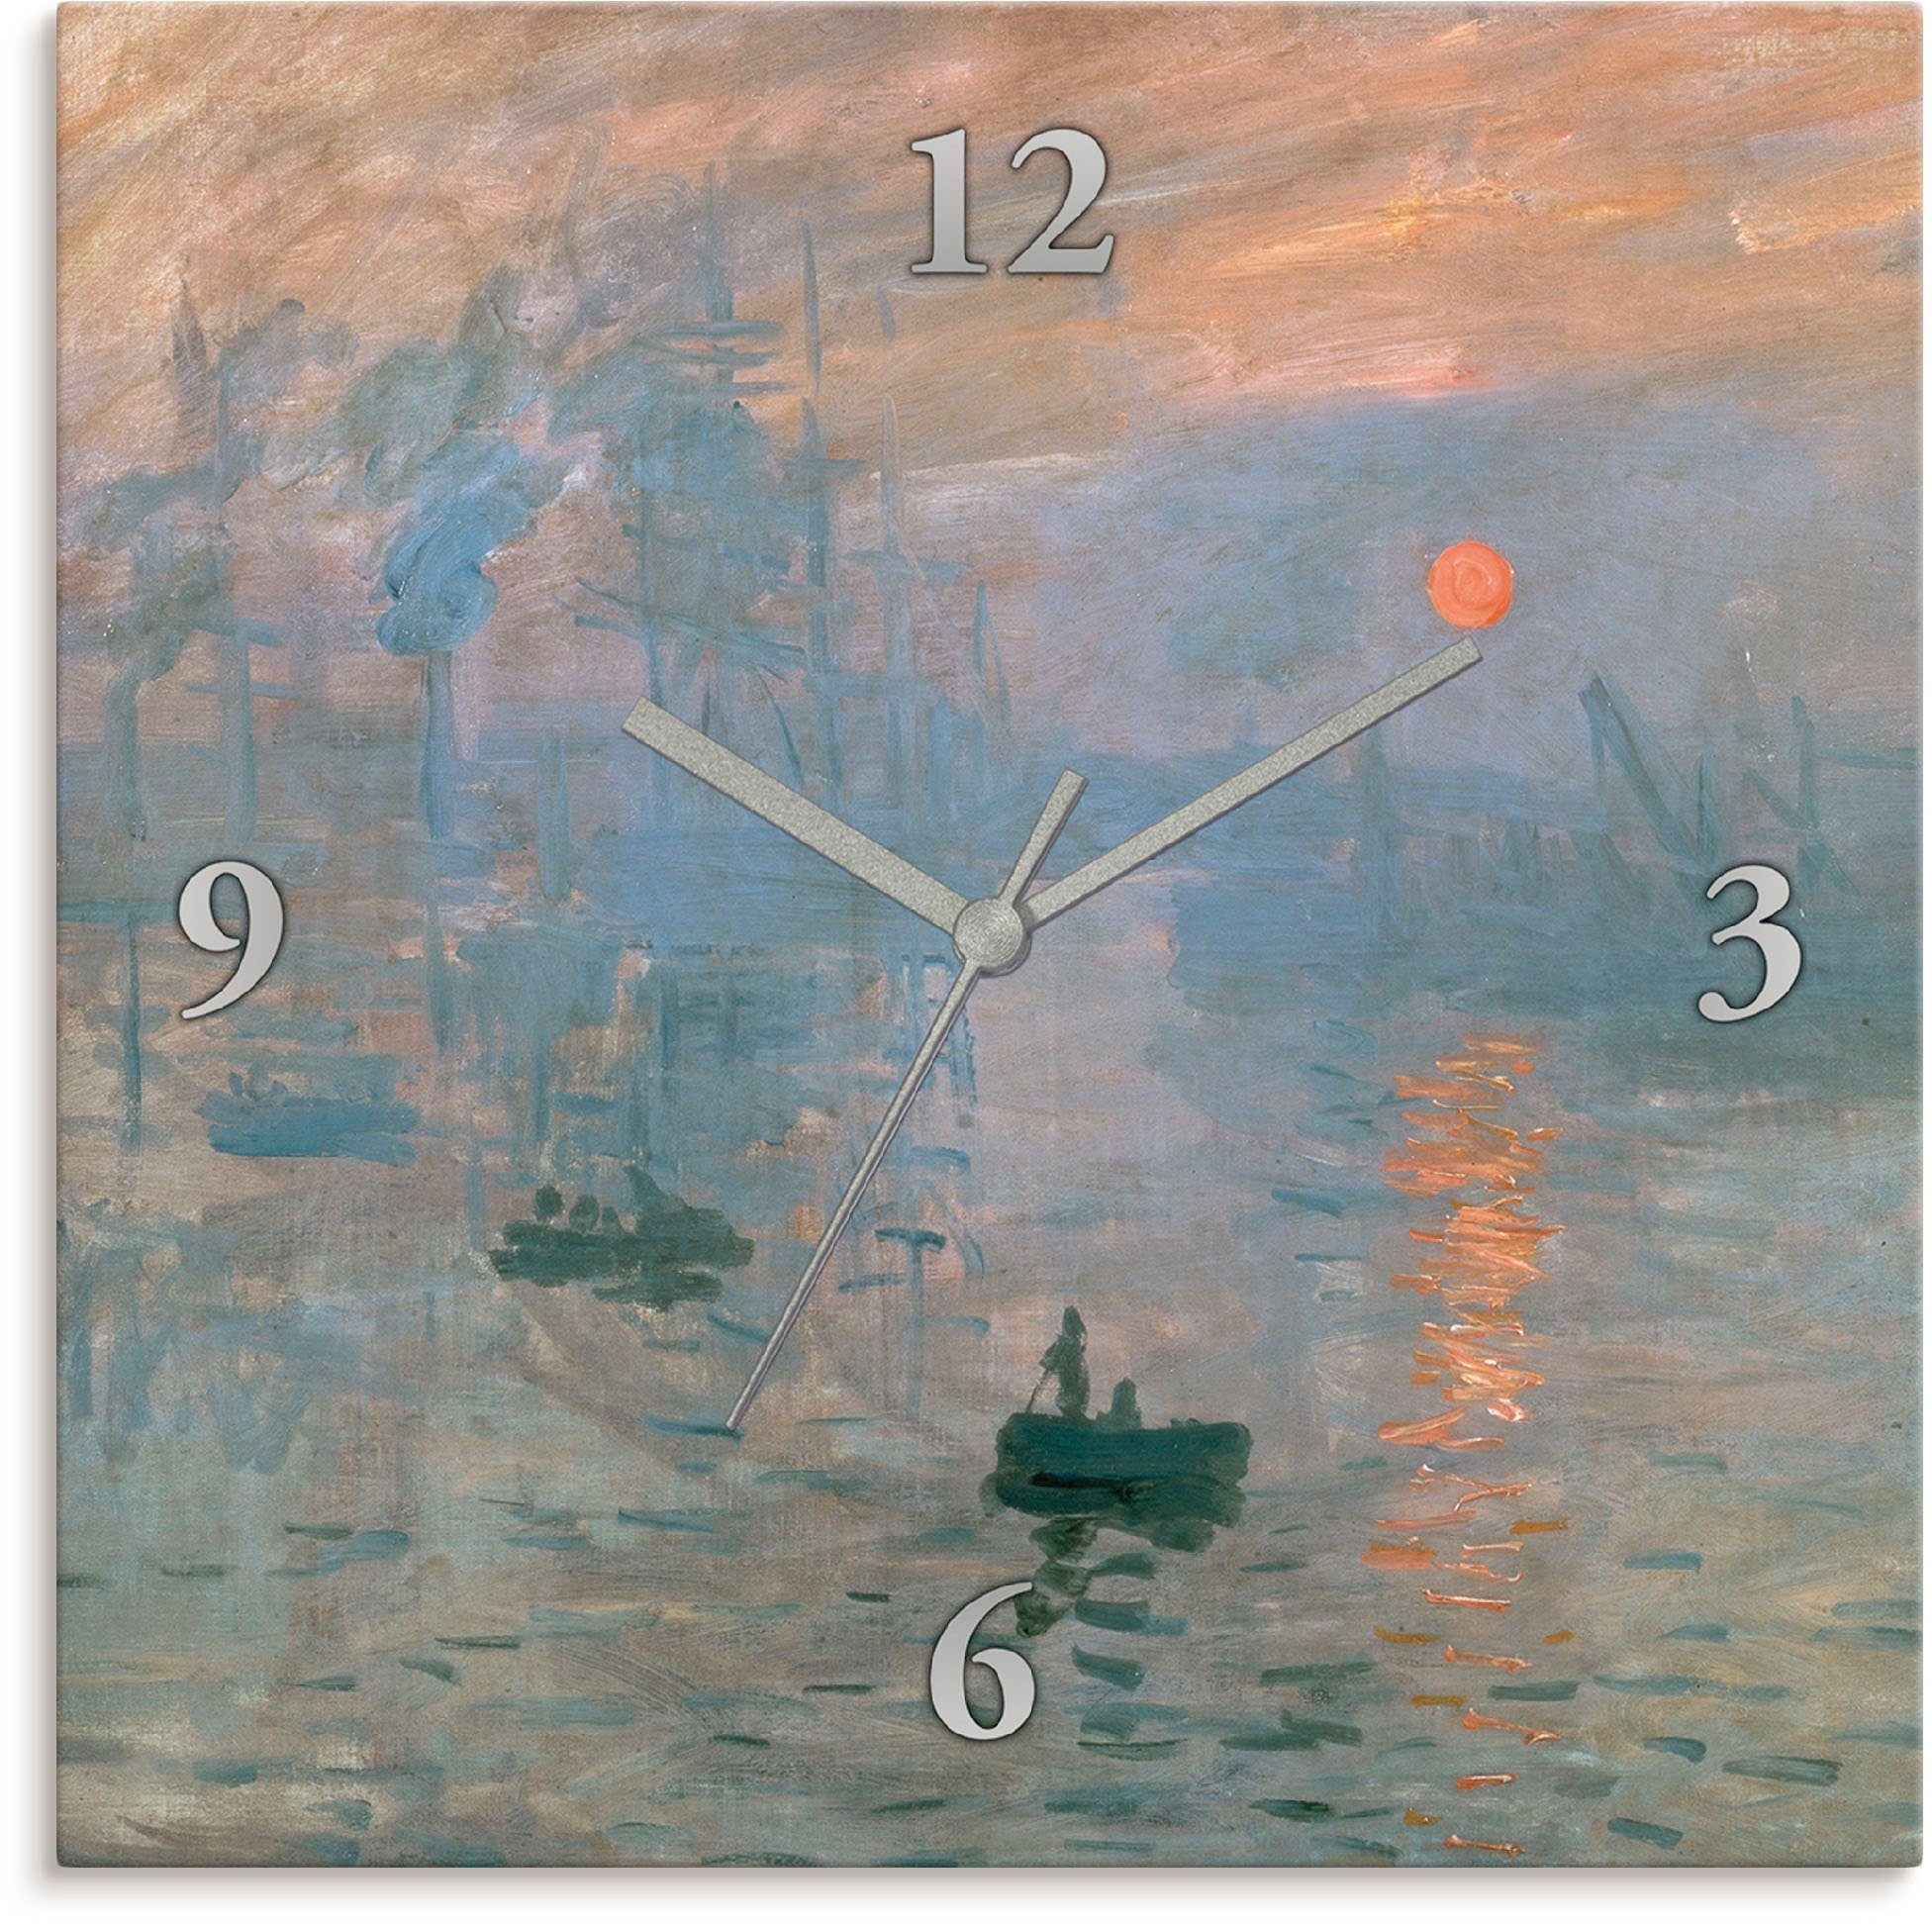 Artland Wanduhr Impression (Sonnenaufgang). 1872 (wahlweise mit Quarz- oder Funkuhrwerk, lautlos ohne Tickgeräusche)